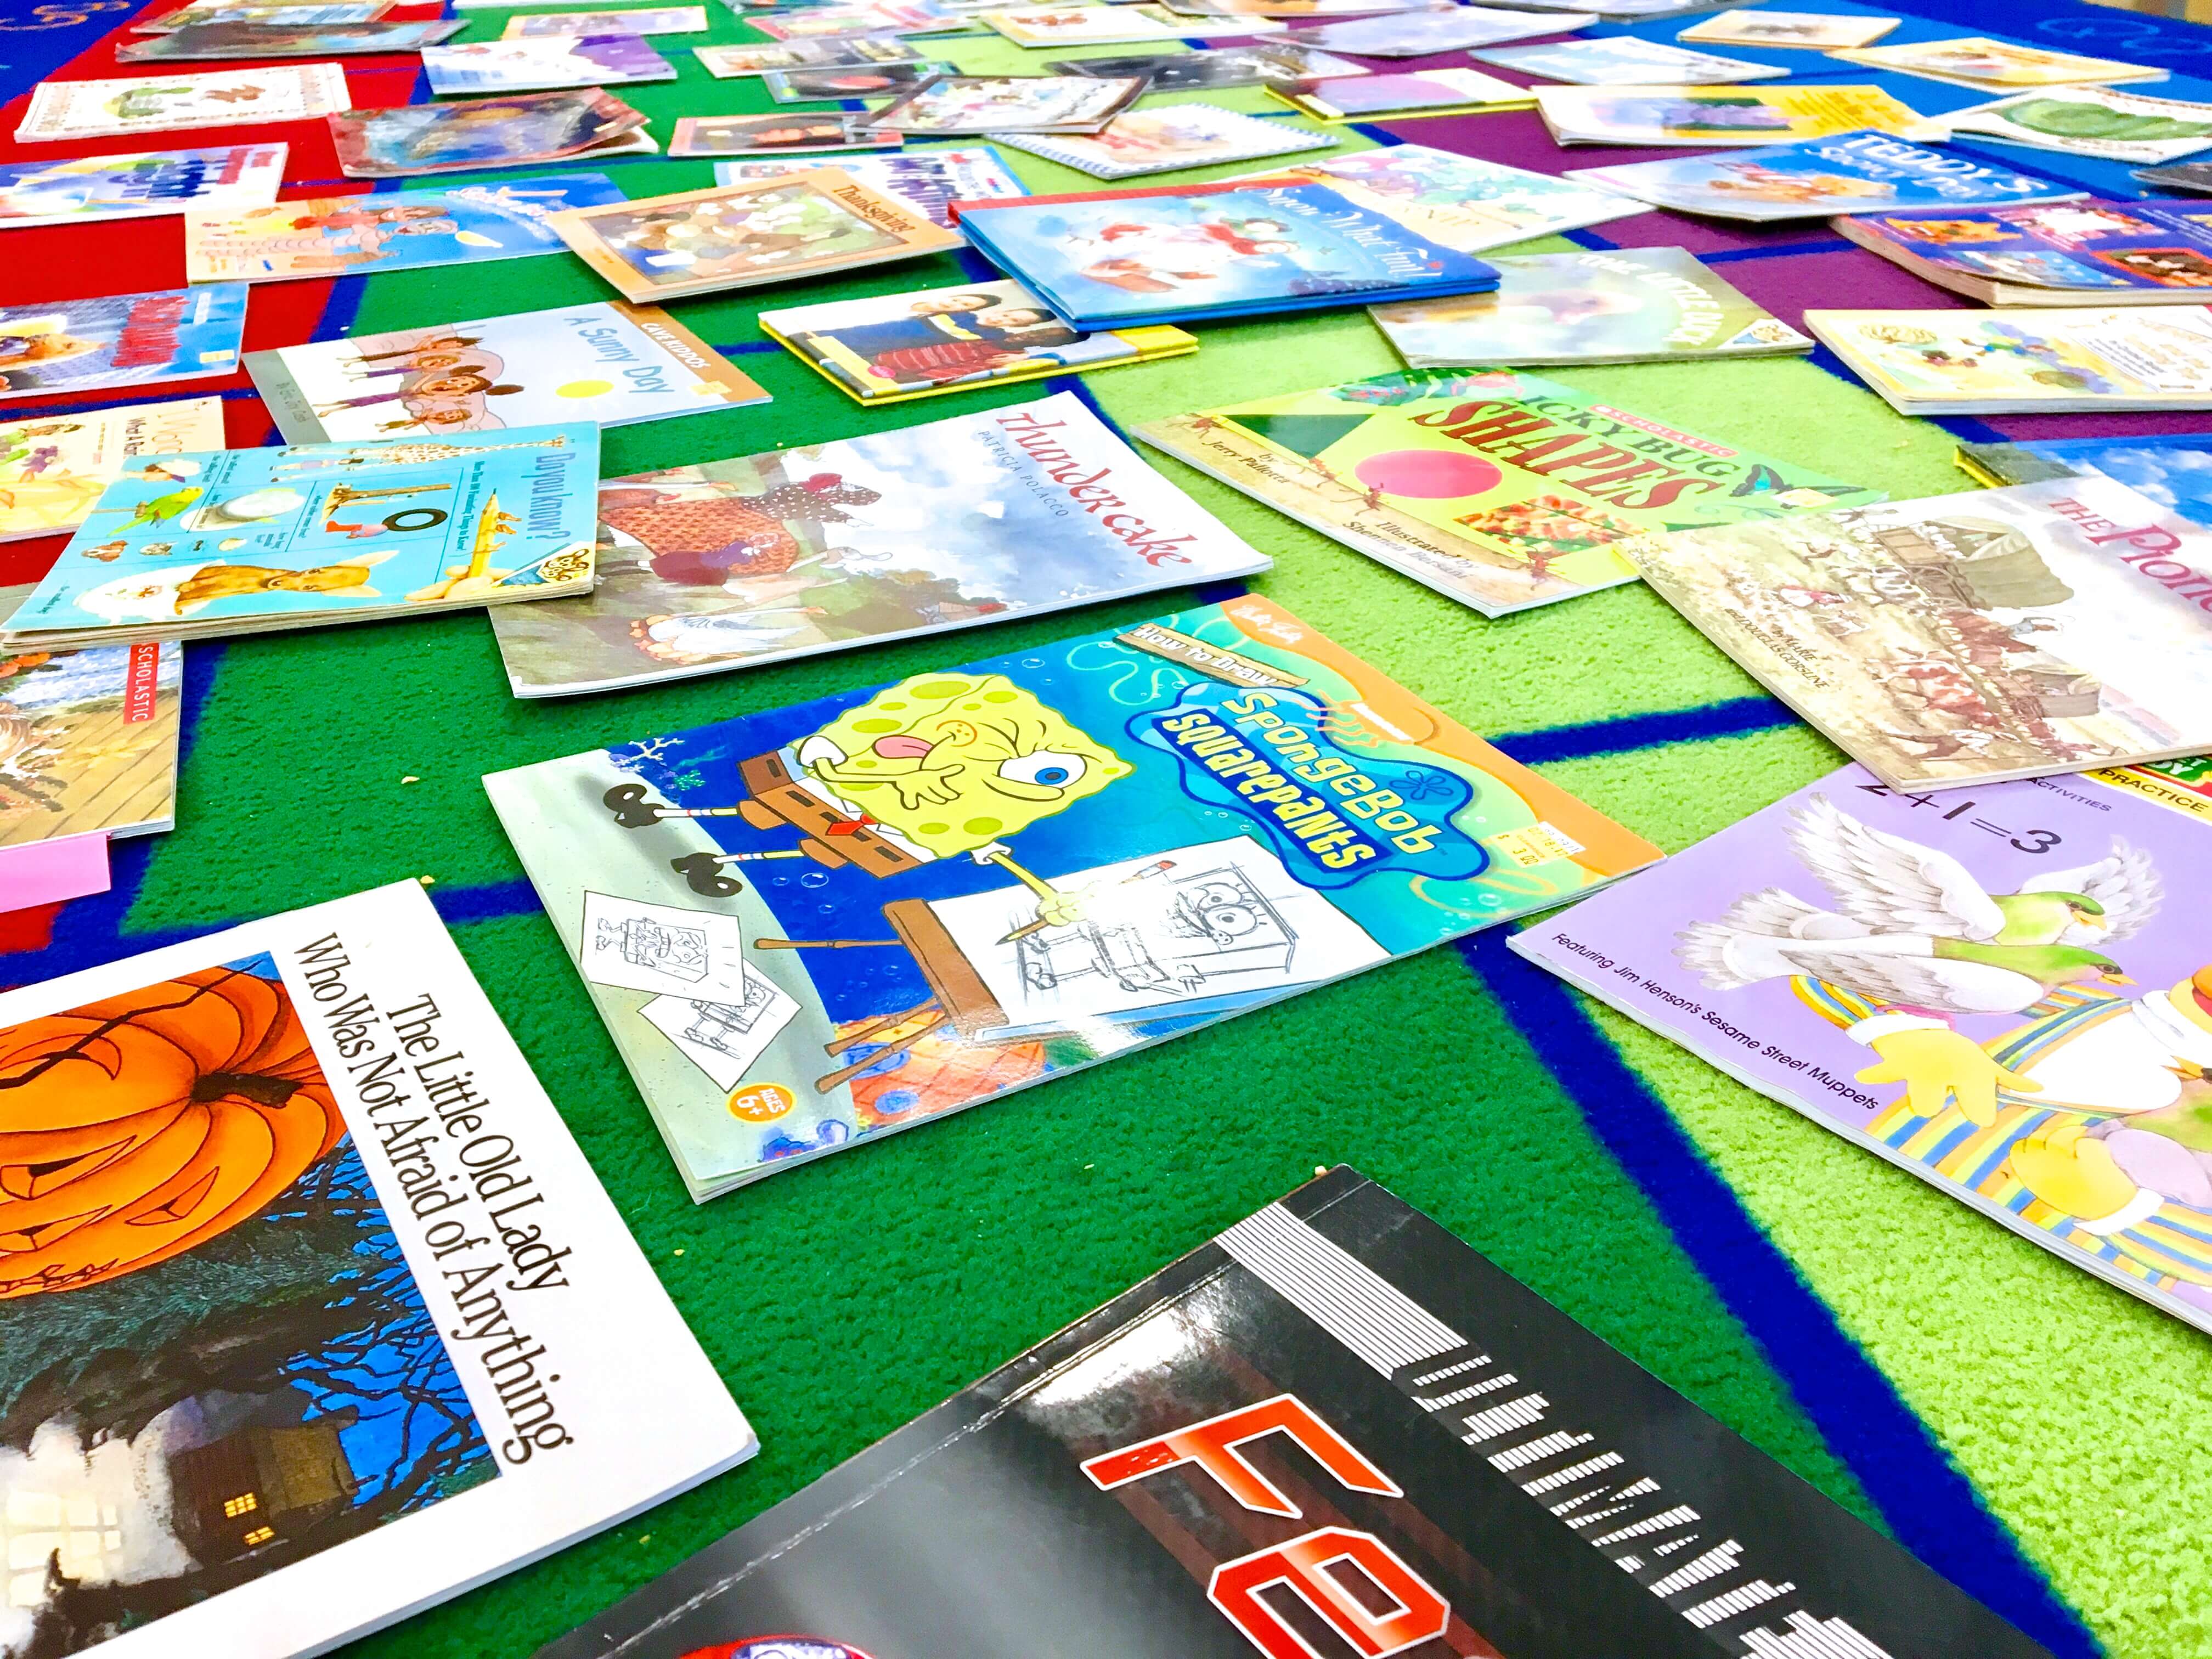  gubanc több száz ingyenes kép-és fejezetkönyvet az osztálytermi könyvtár vagy diákkönyvtárak számára a helyi féláras könyvesboltból.